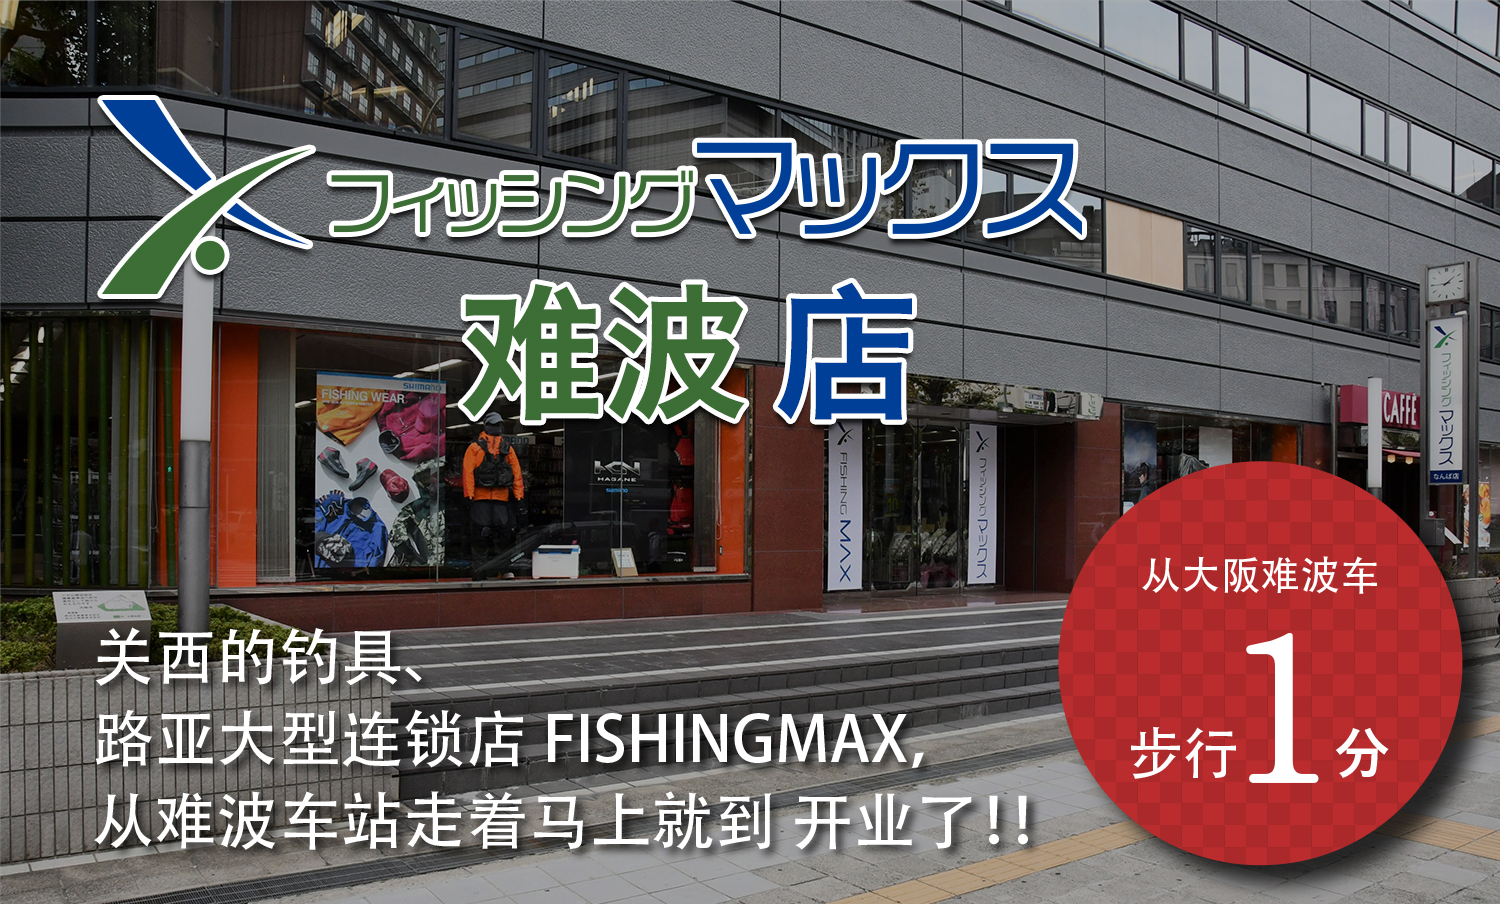 渔具、户外用品大型专卖店“FISHINGMAX”难波店